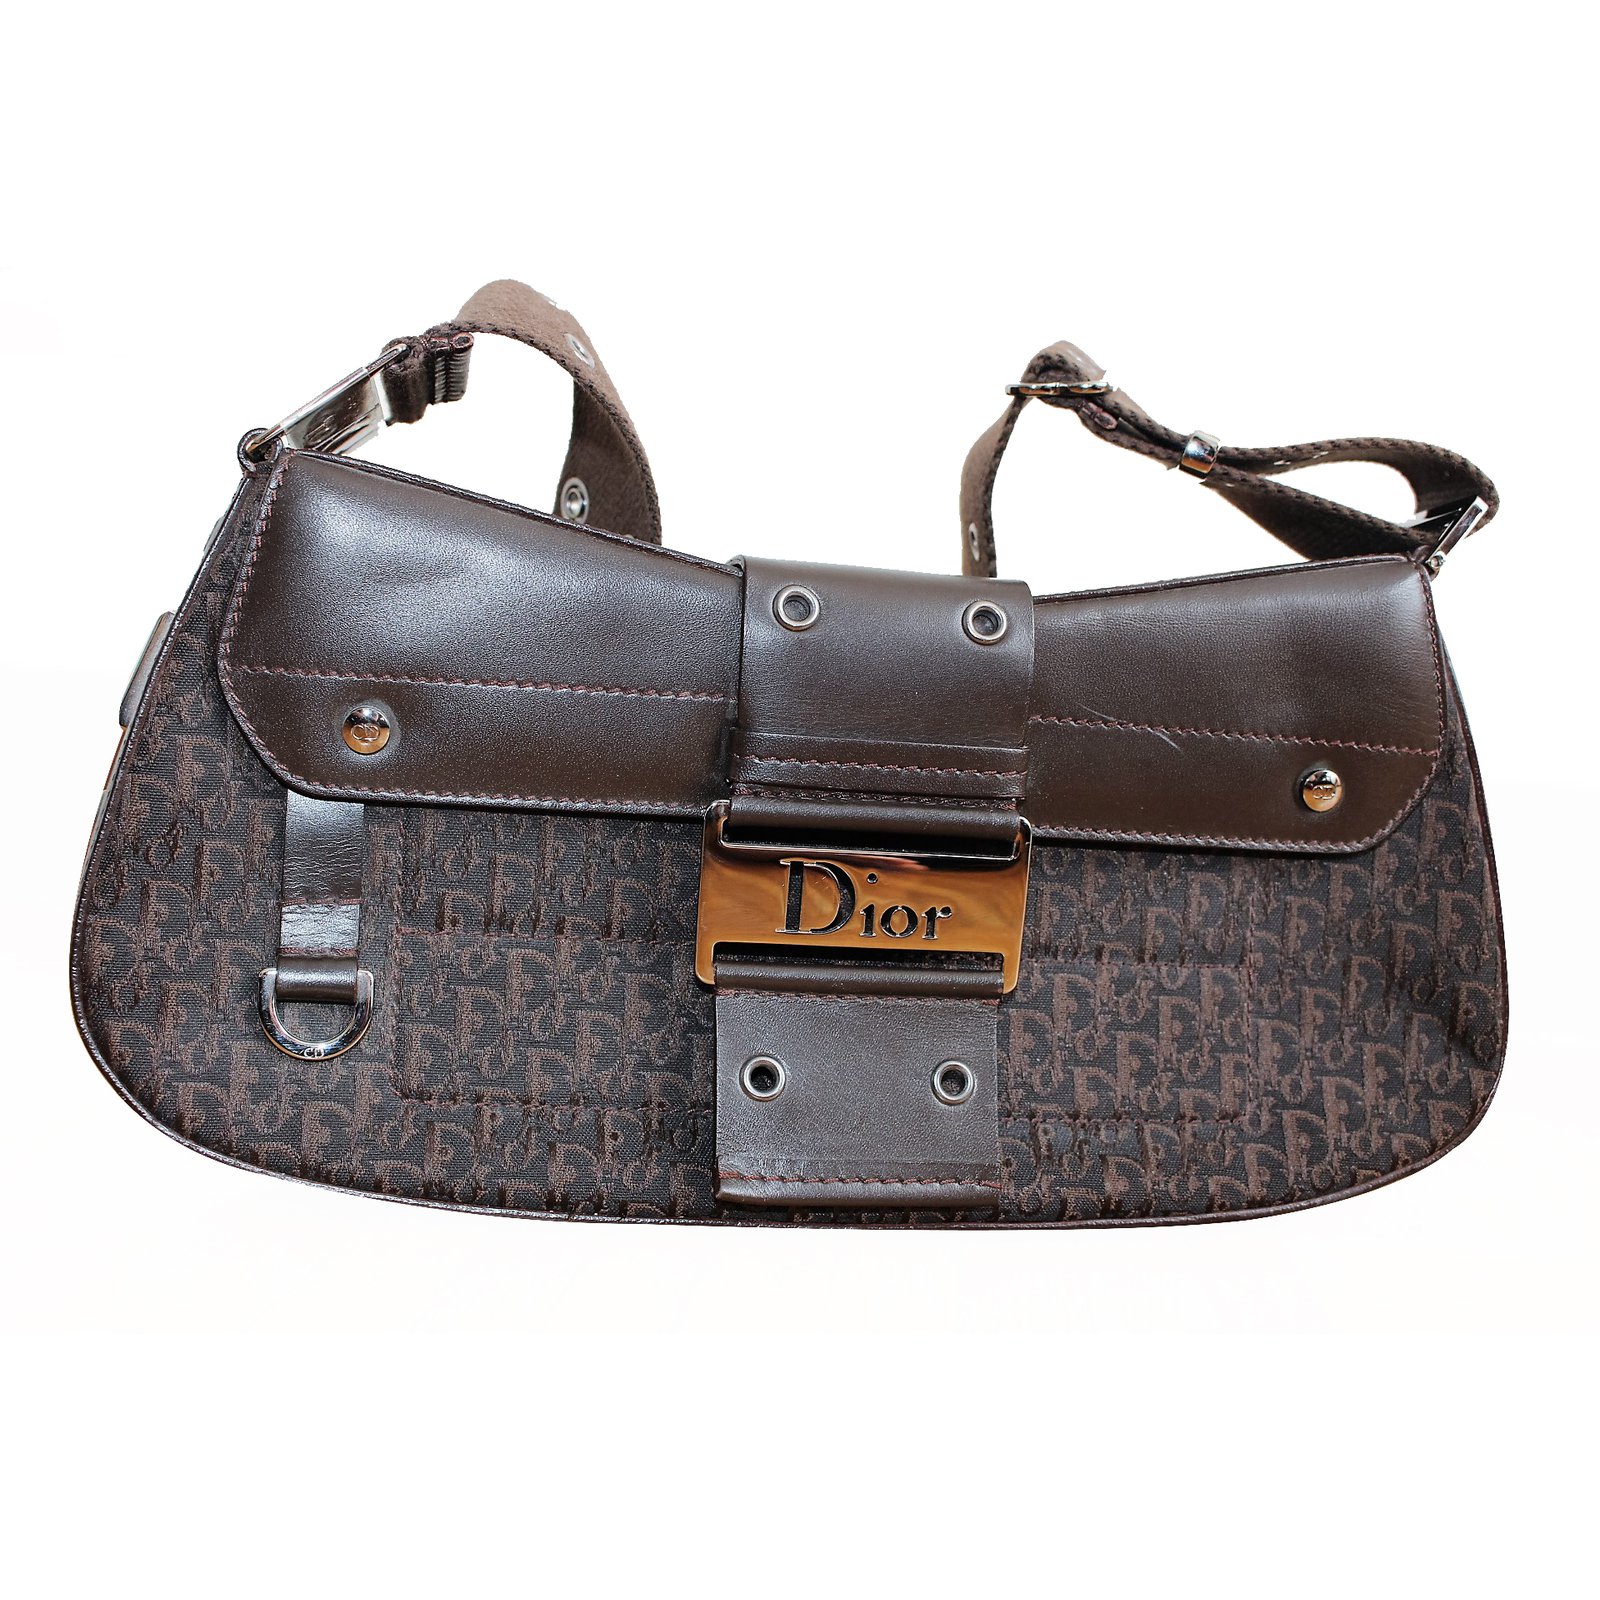 Christian Dior Handbag Handbags Leather 